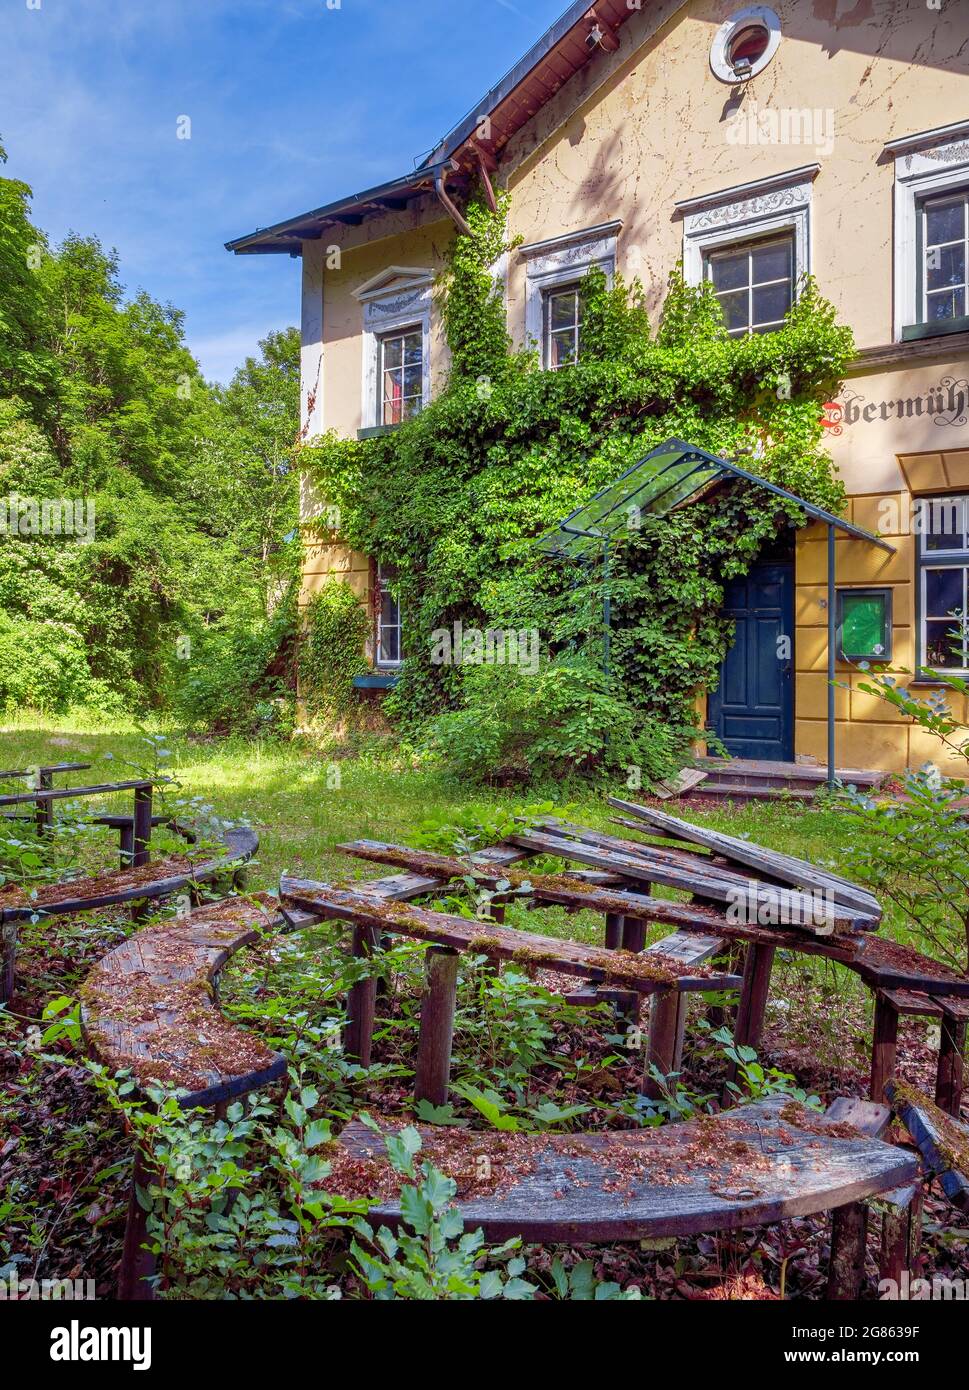 Lost Place, bewachsener Biergarten mit moosigen Sitzbereichen, Gasthof Obermühltal, Bayern, Deutschland, Europa Stockfoto